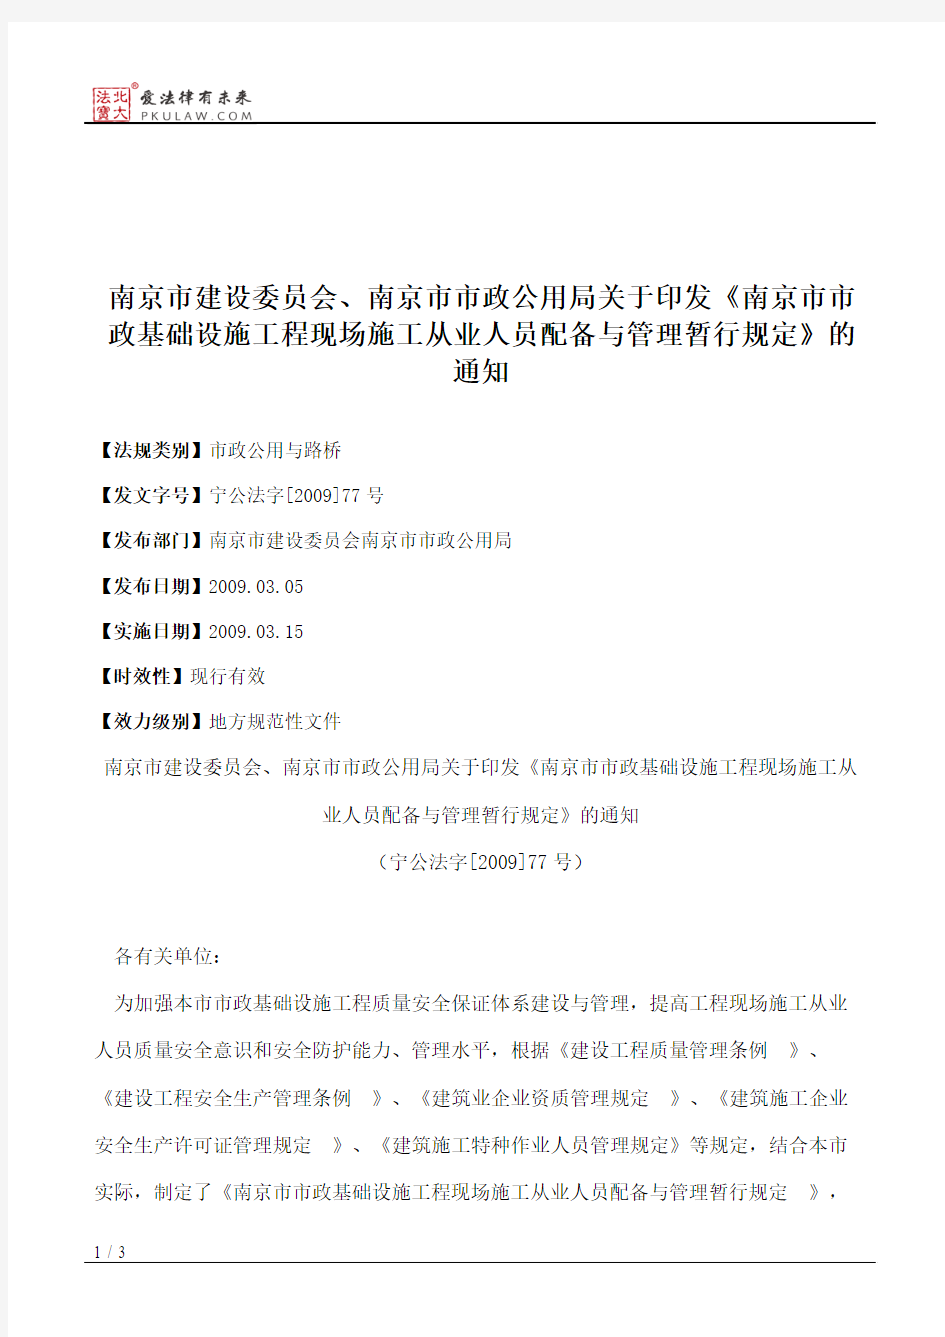 南京市建设委员会、南京市市政公用局关于印发《南京市市政基础设